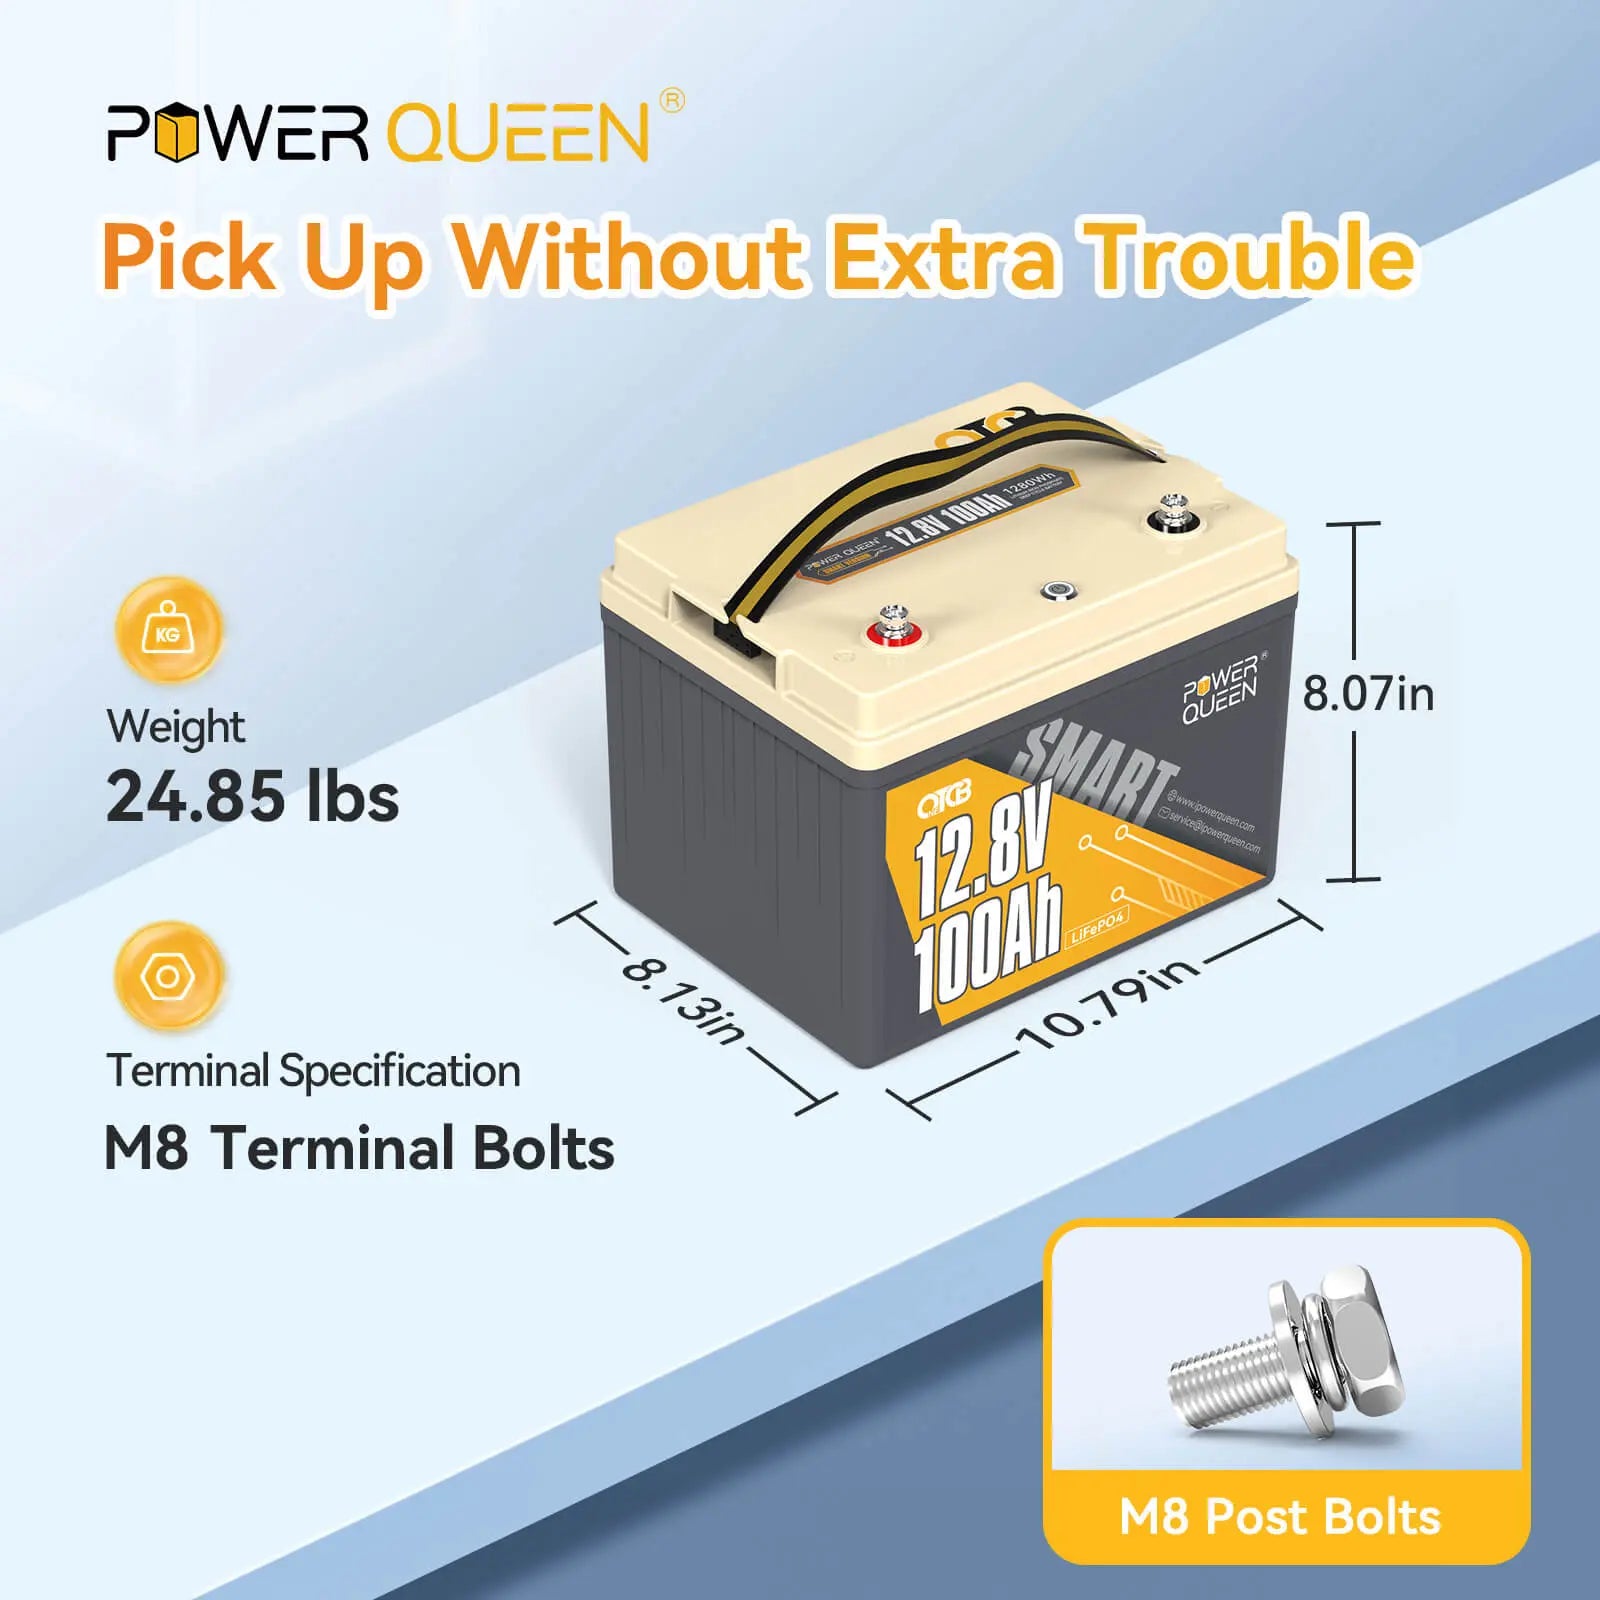 Power Queen 12V 100Ah OTCB Smart LiFePO4 Battery, Built-in 100A Smart BMS Power Queen